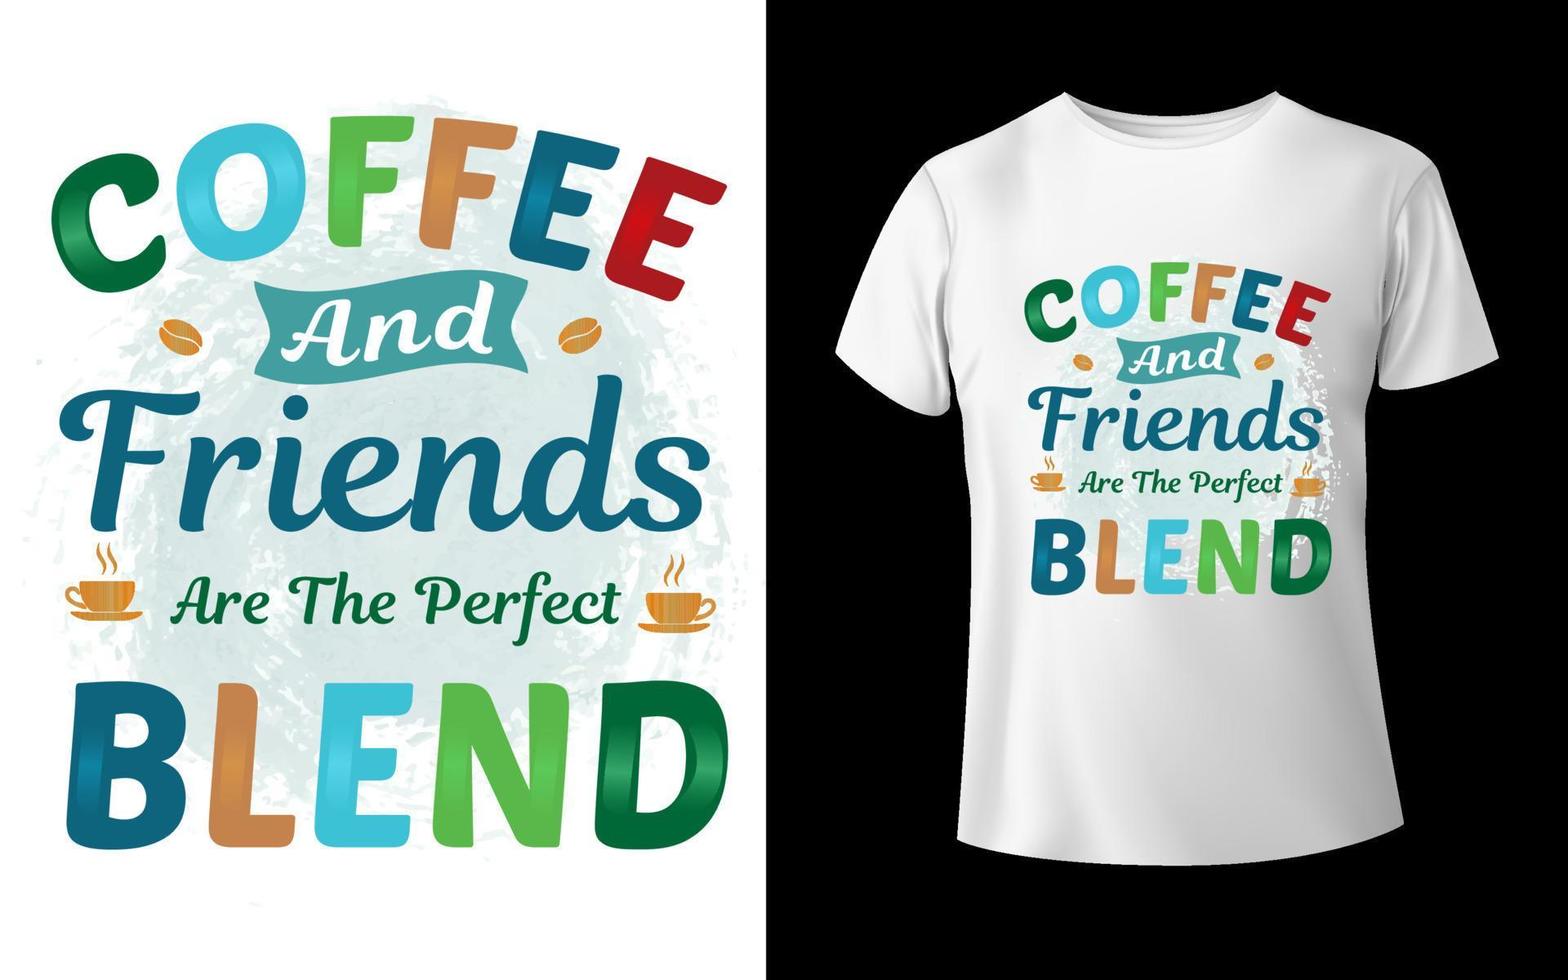 Kaffee-T-Shirt-Design Kaffee-Vektor Ich liebe Kaffee-T-Shirt-Design vektor